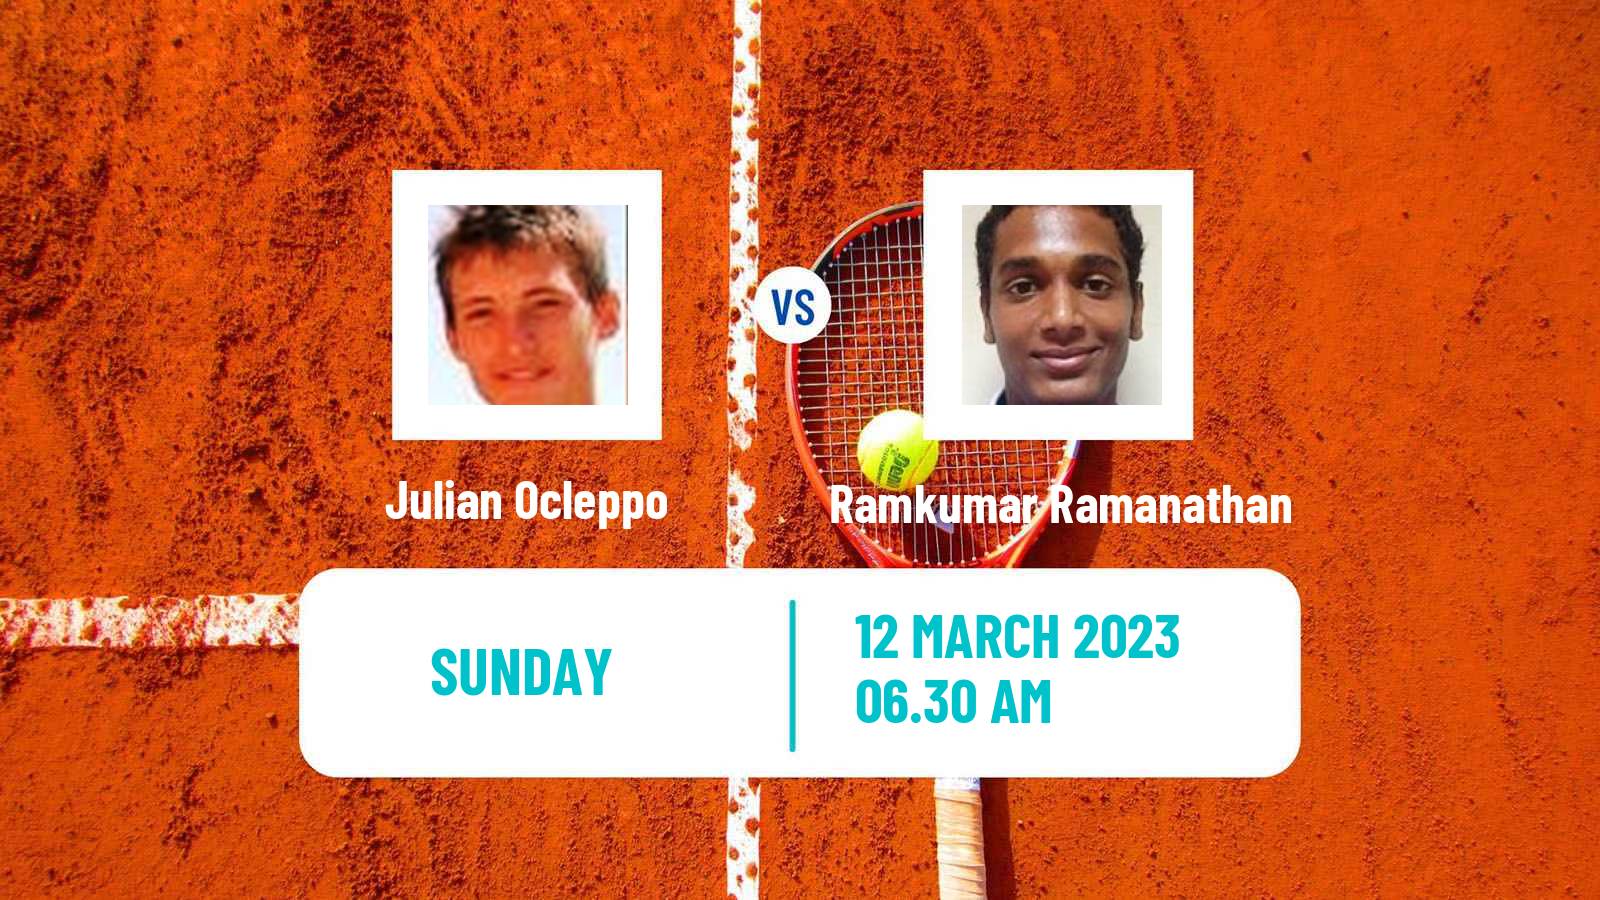 Tennis ATP Challenger Julian Ocleppo - Ramkumar Ramanathan